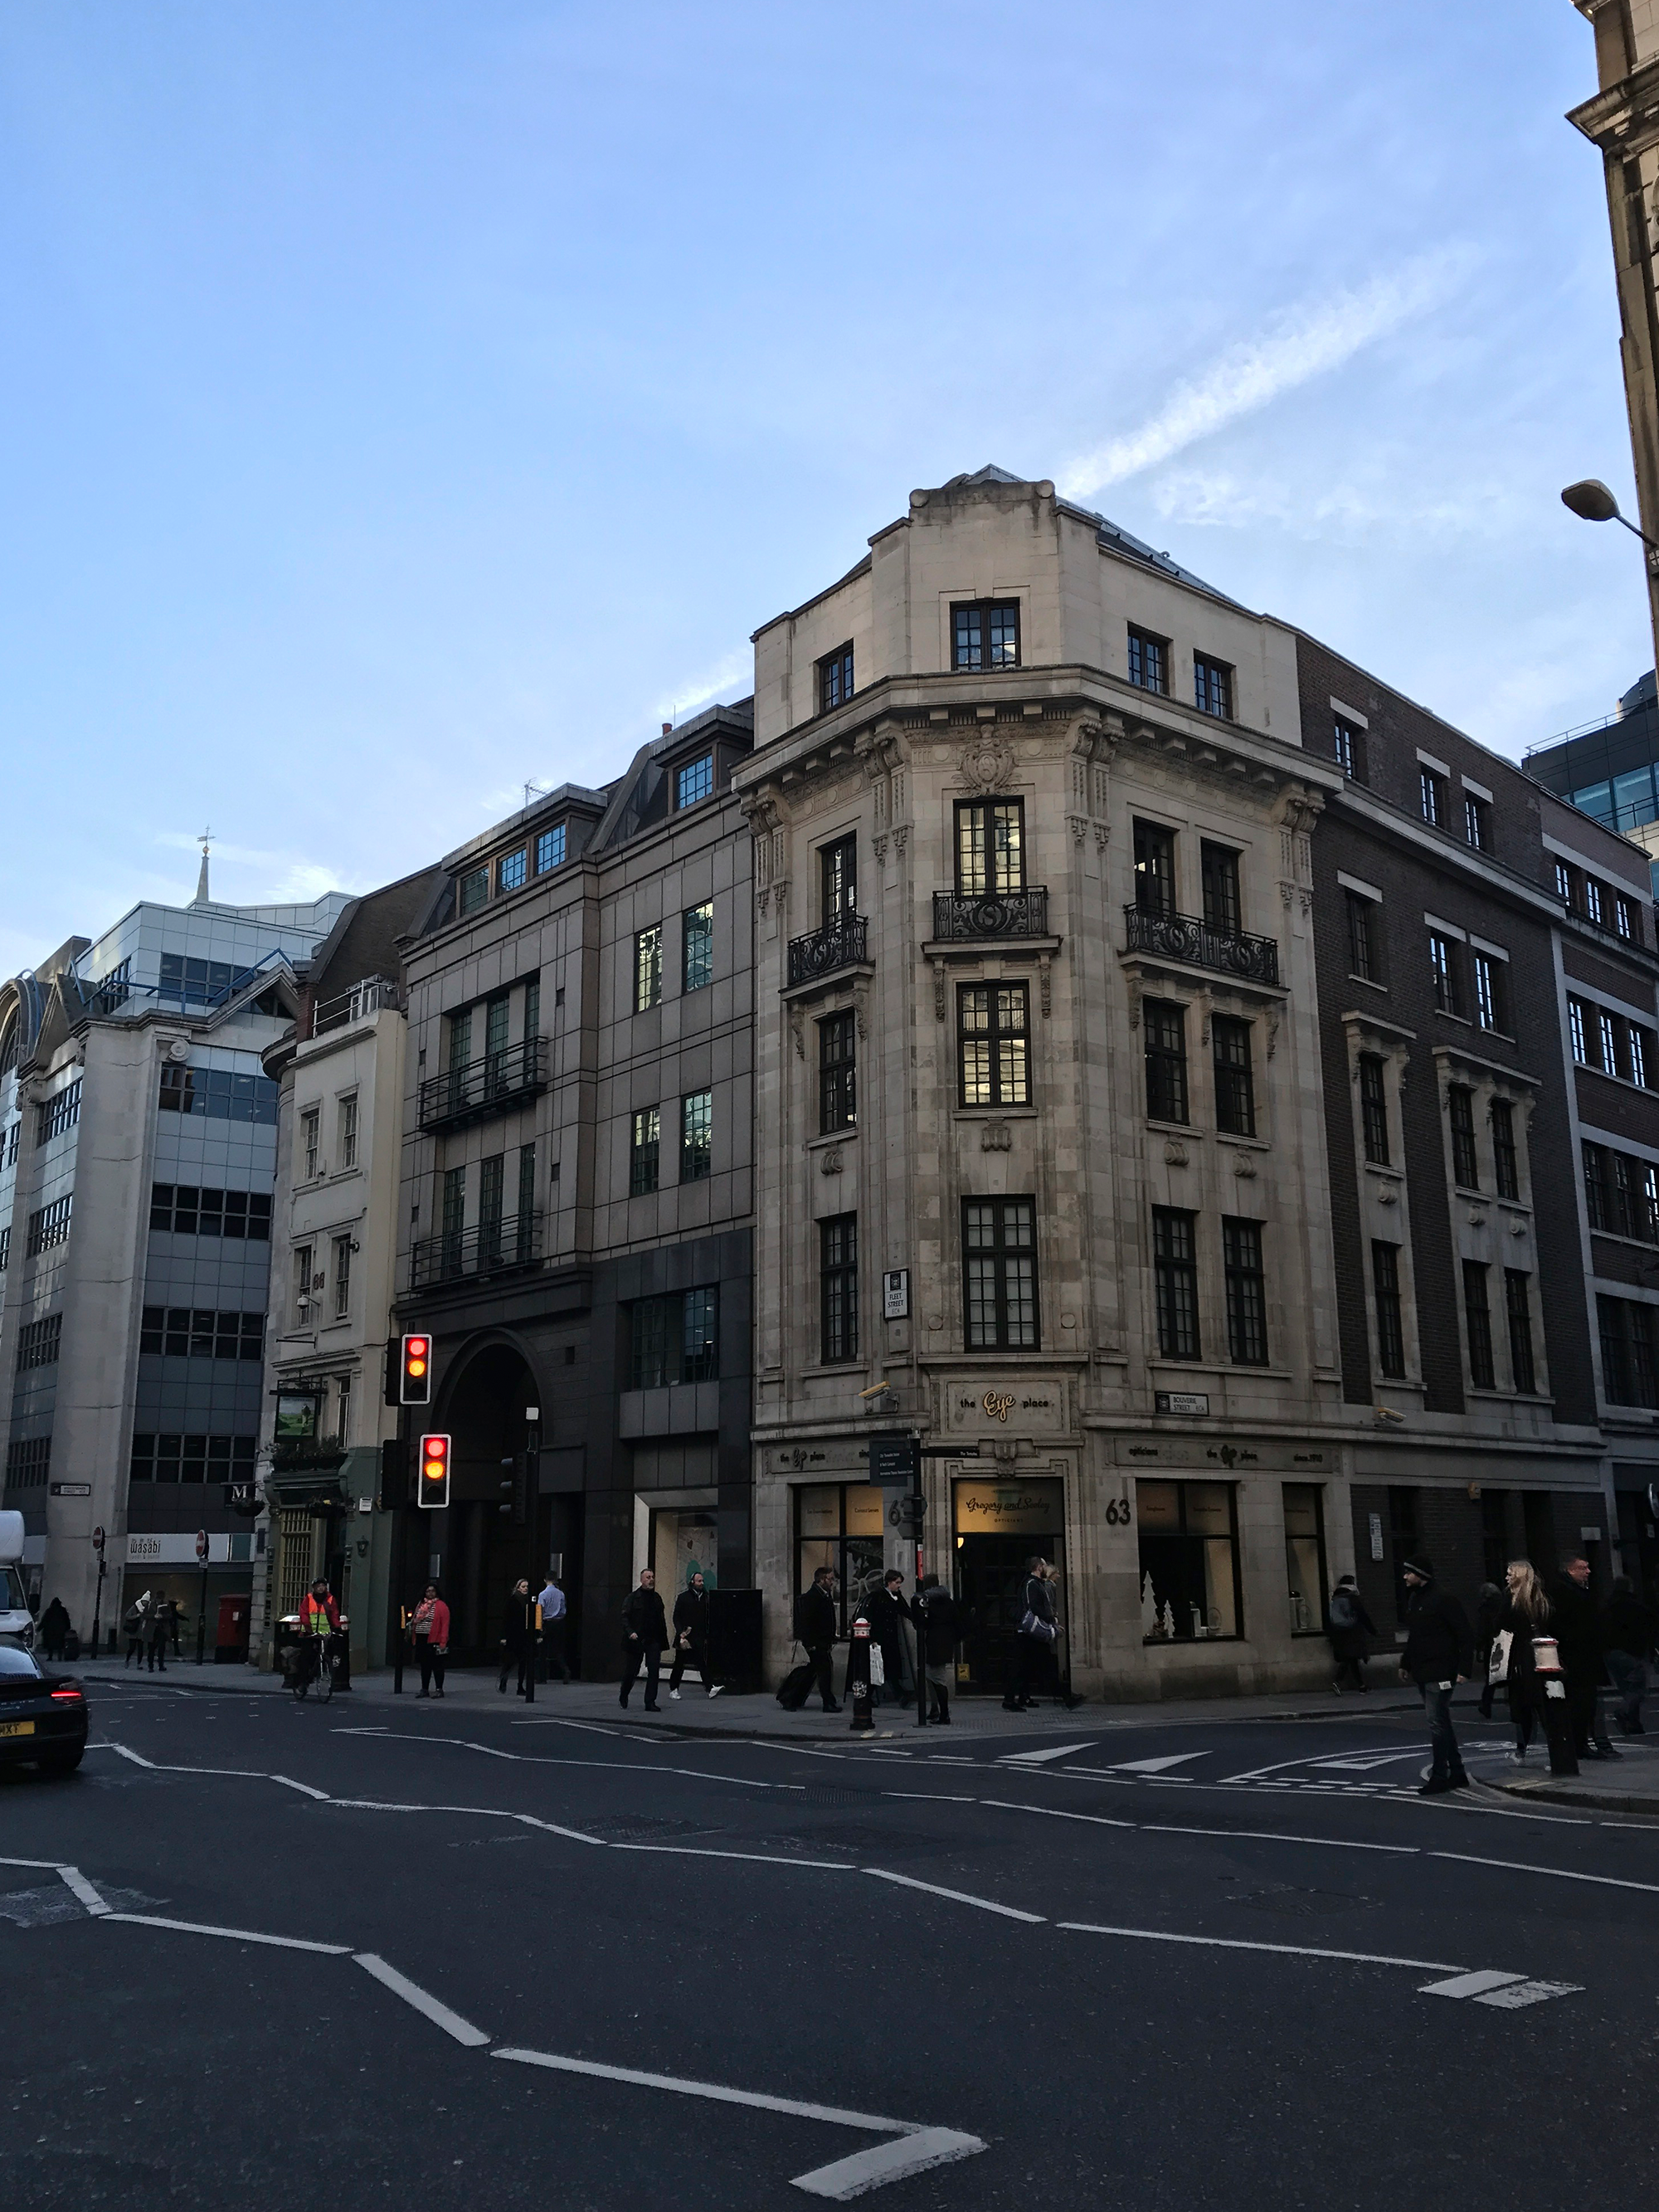 View from 65 Fleet Street